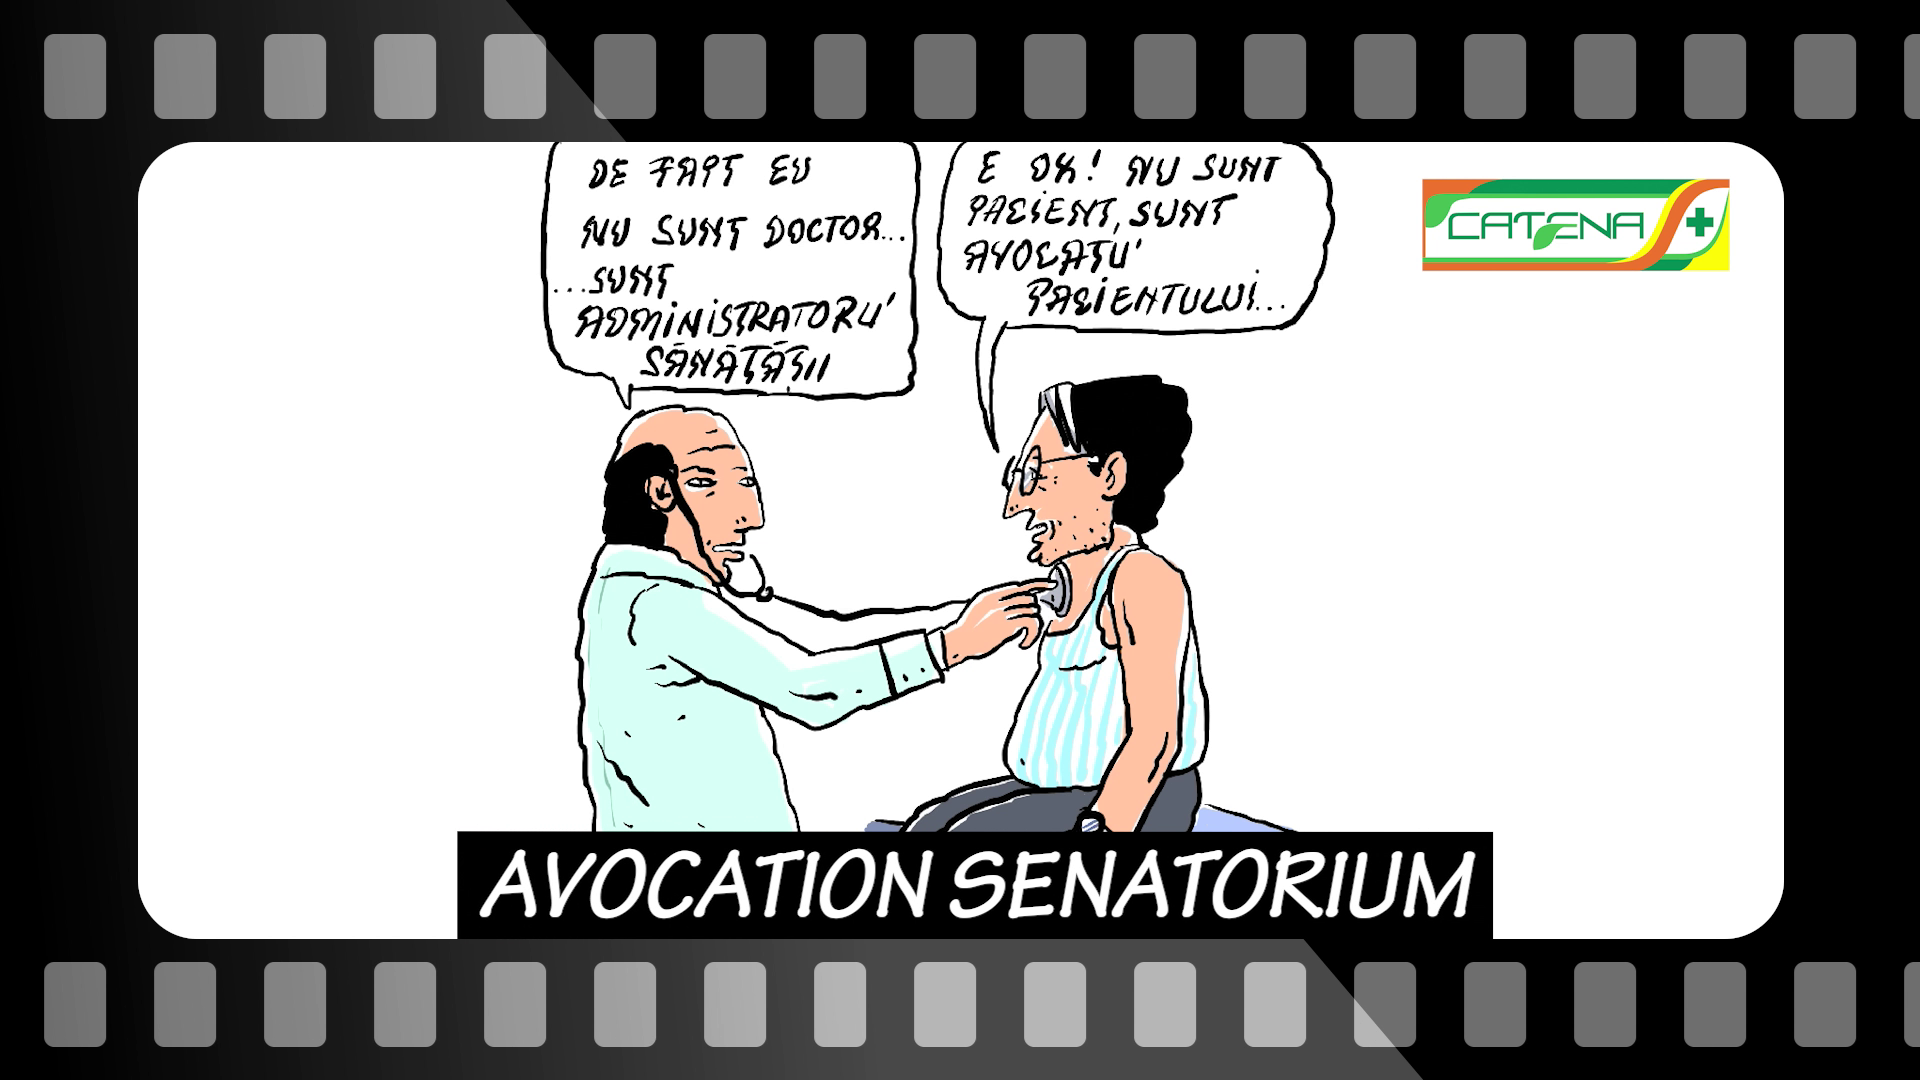 Avocation senatorium Ep. 95